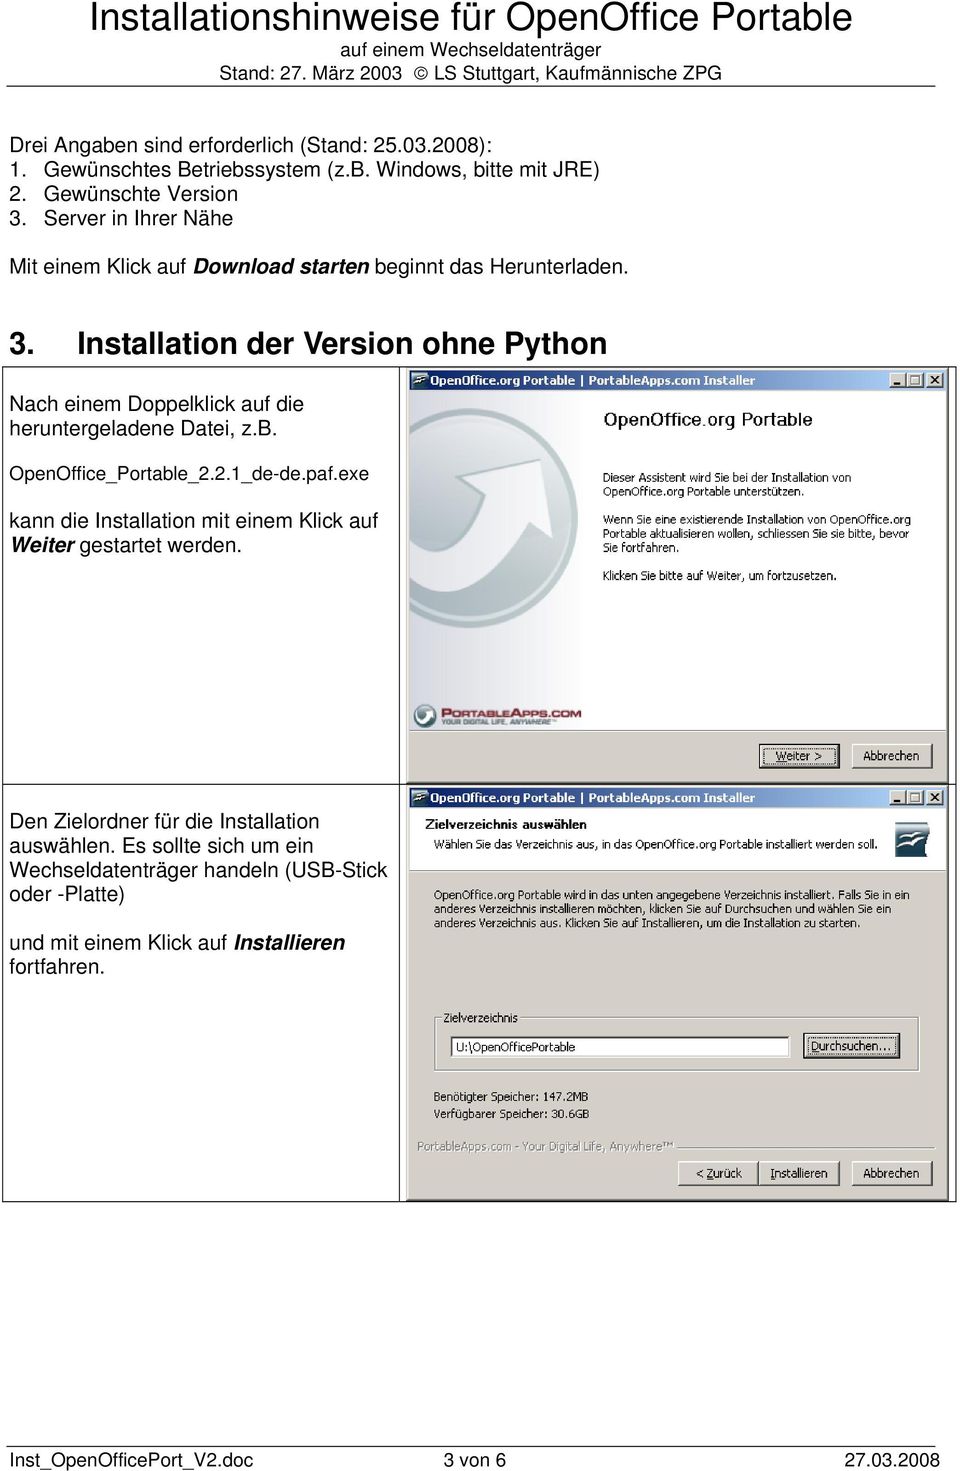 Installation der Version ohne Python Nach einem Doppelklick auf die heruntergeladene Datei, z.b. OpenOffice_Portable_2.2.1_de-de.paf.